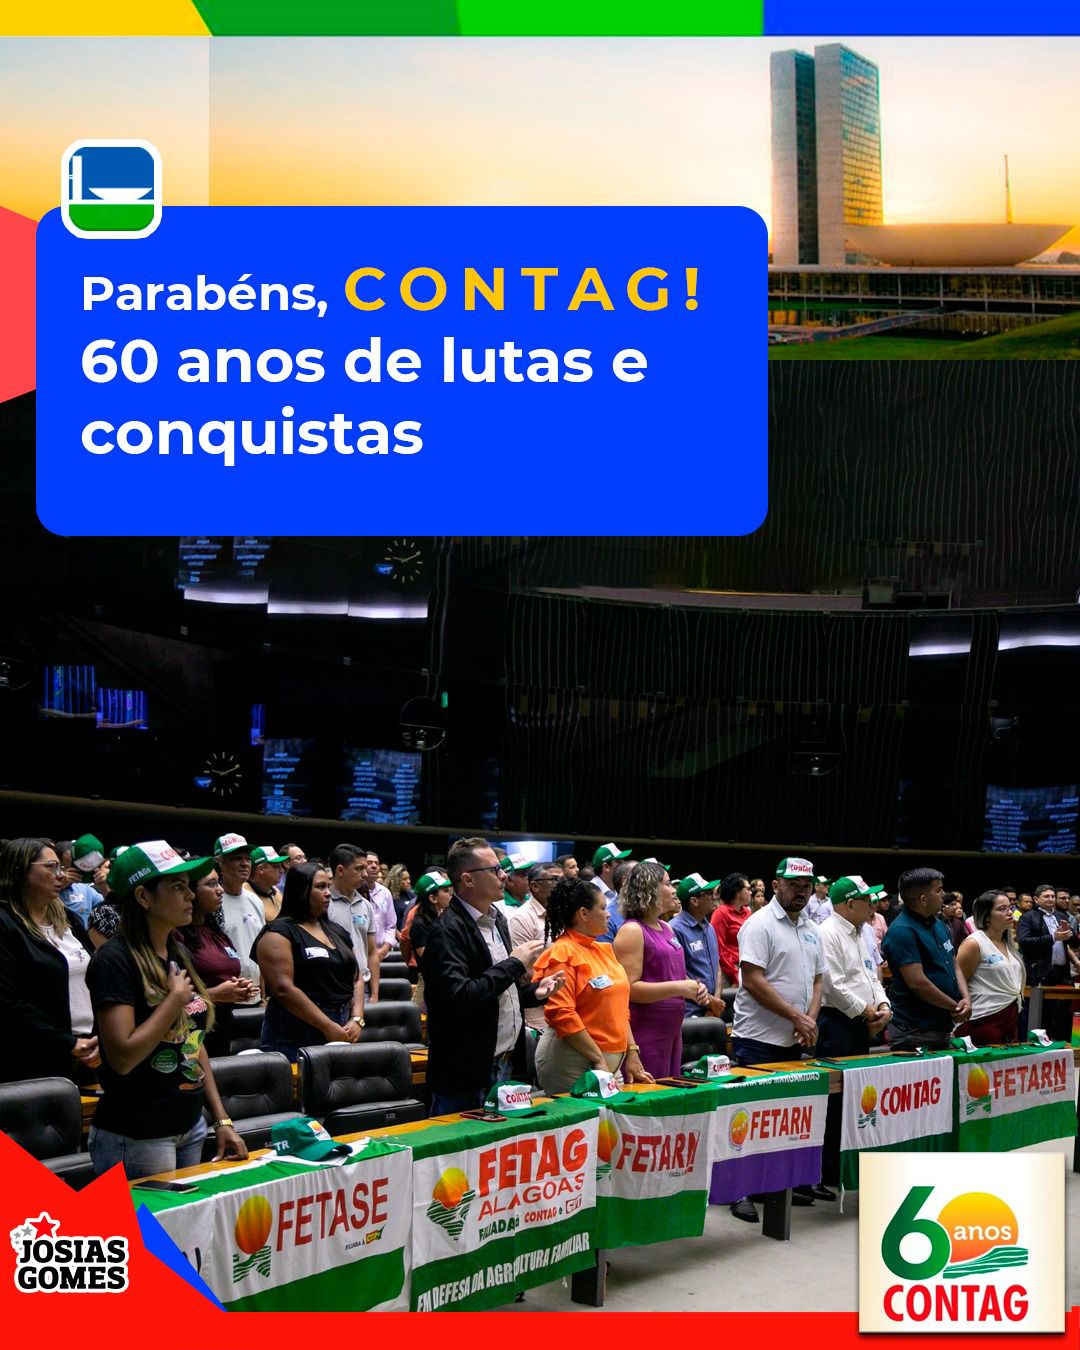 CONTAG Celebra 60 Anos De Lutas, Glórias E Conquistas A Favor Do Povo Brasileiro!